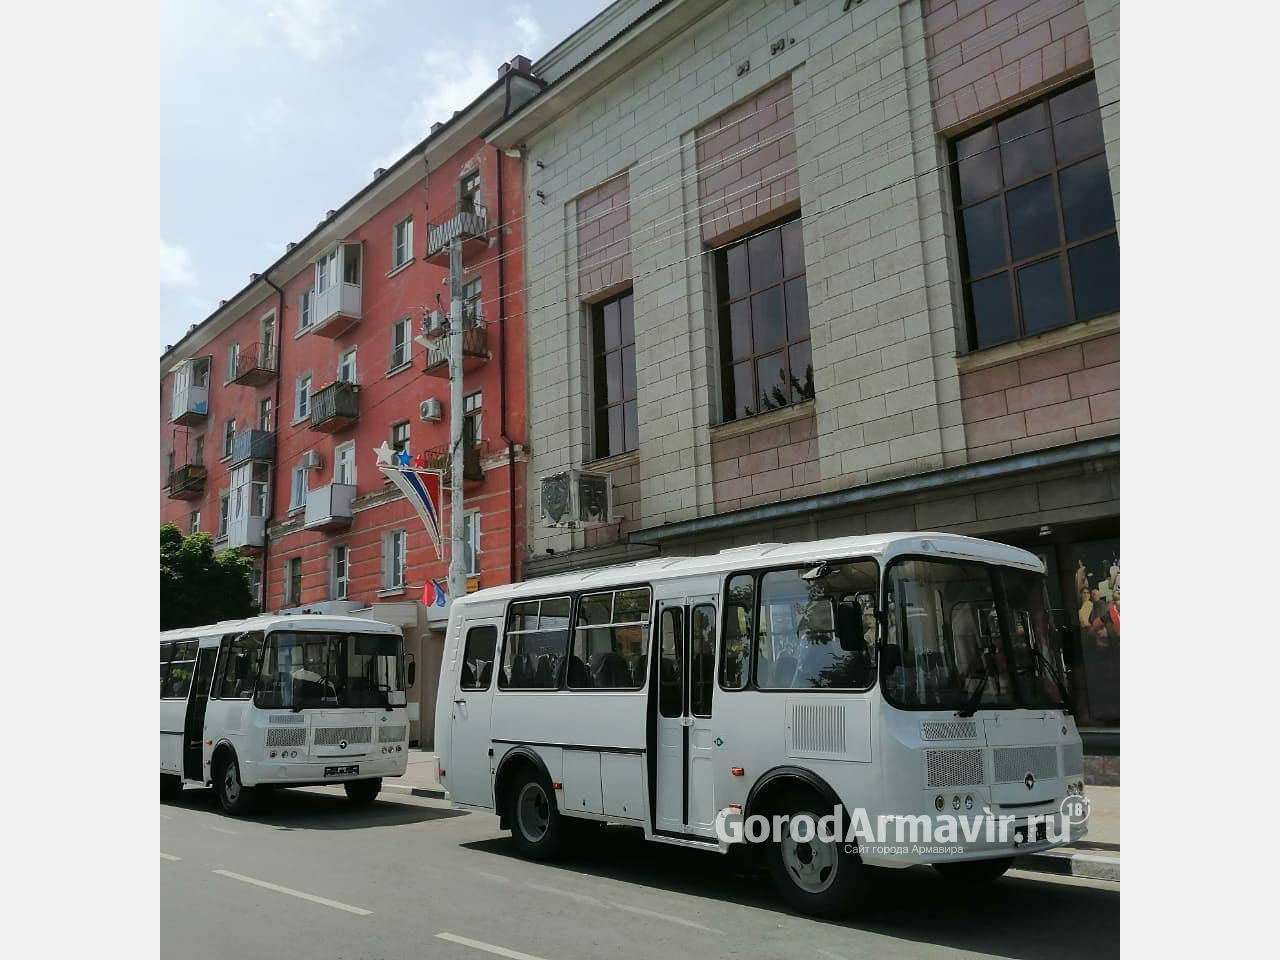 Армавирский театр драмы и комедии приобрел два новых автобуса ПАЗ